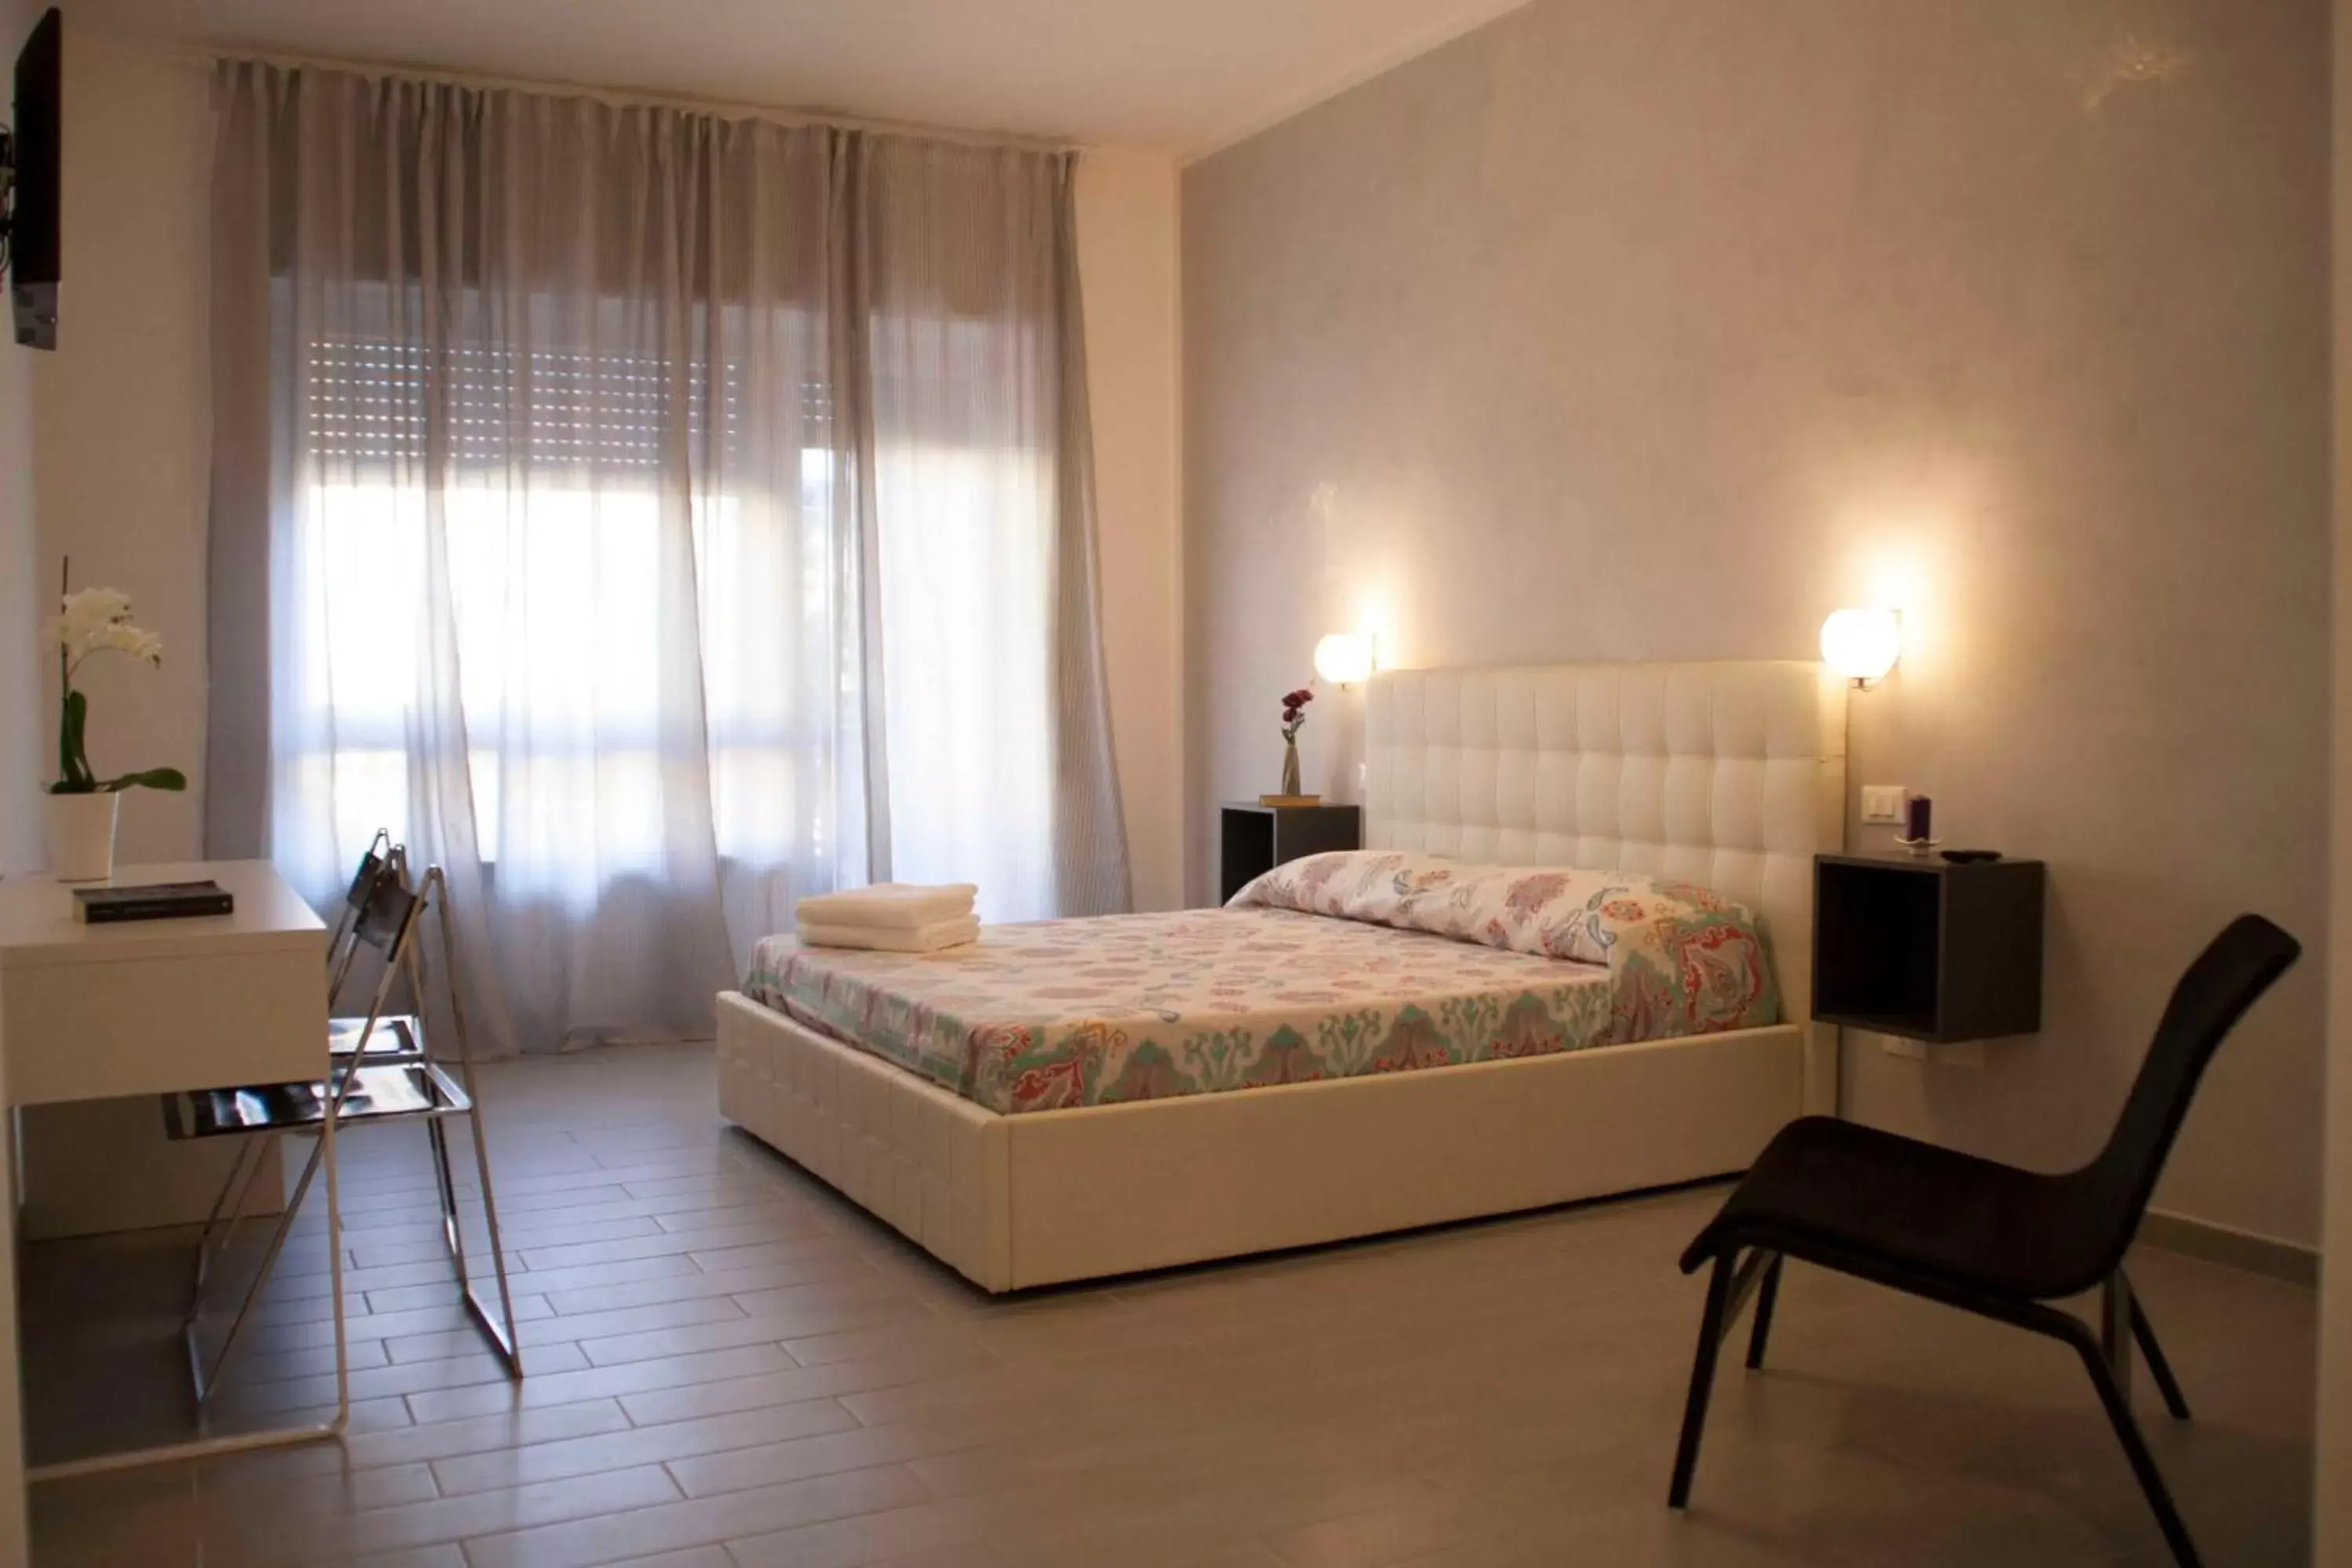 Bed, Room Photo in DaNoi in Trastevere